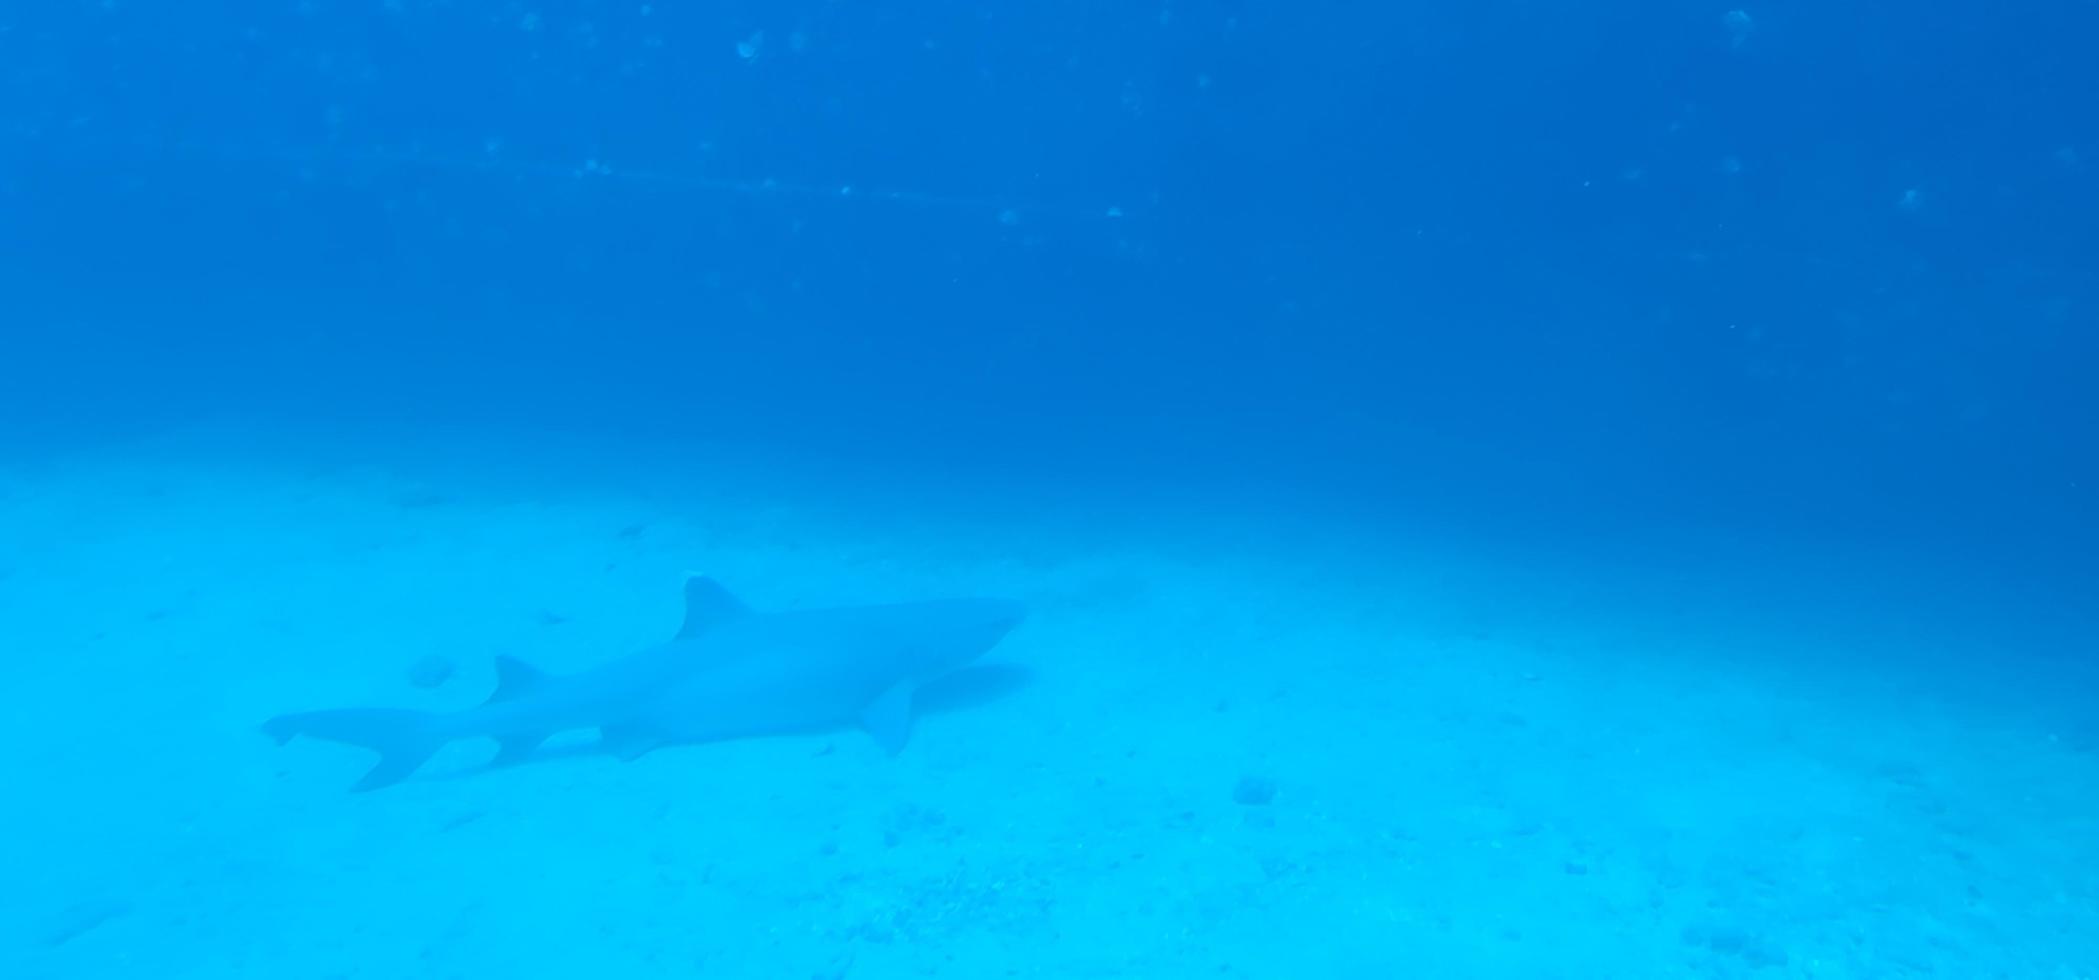 Shark off coast of Maui Hawaii on ocean floor photo